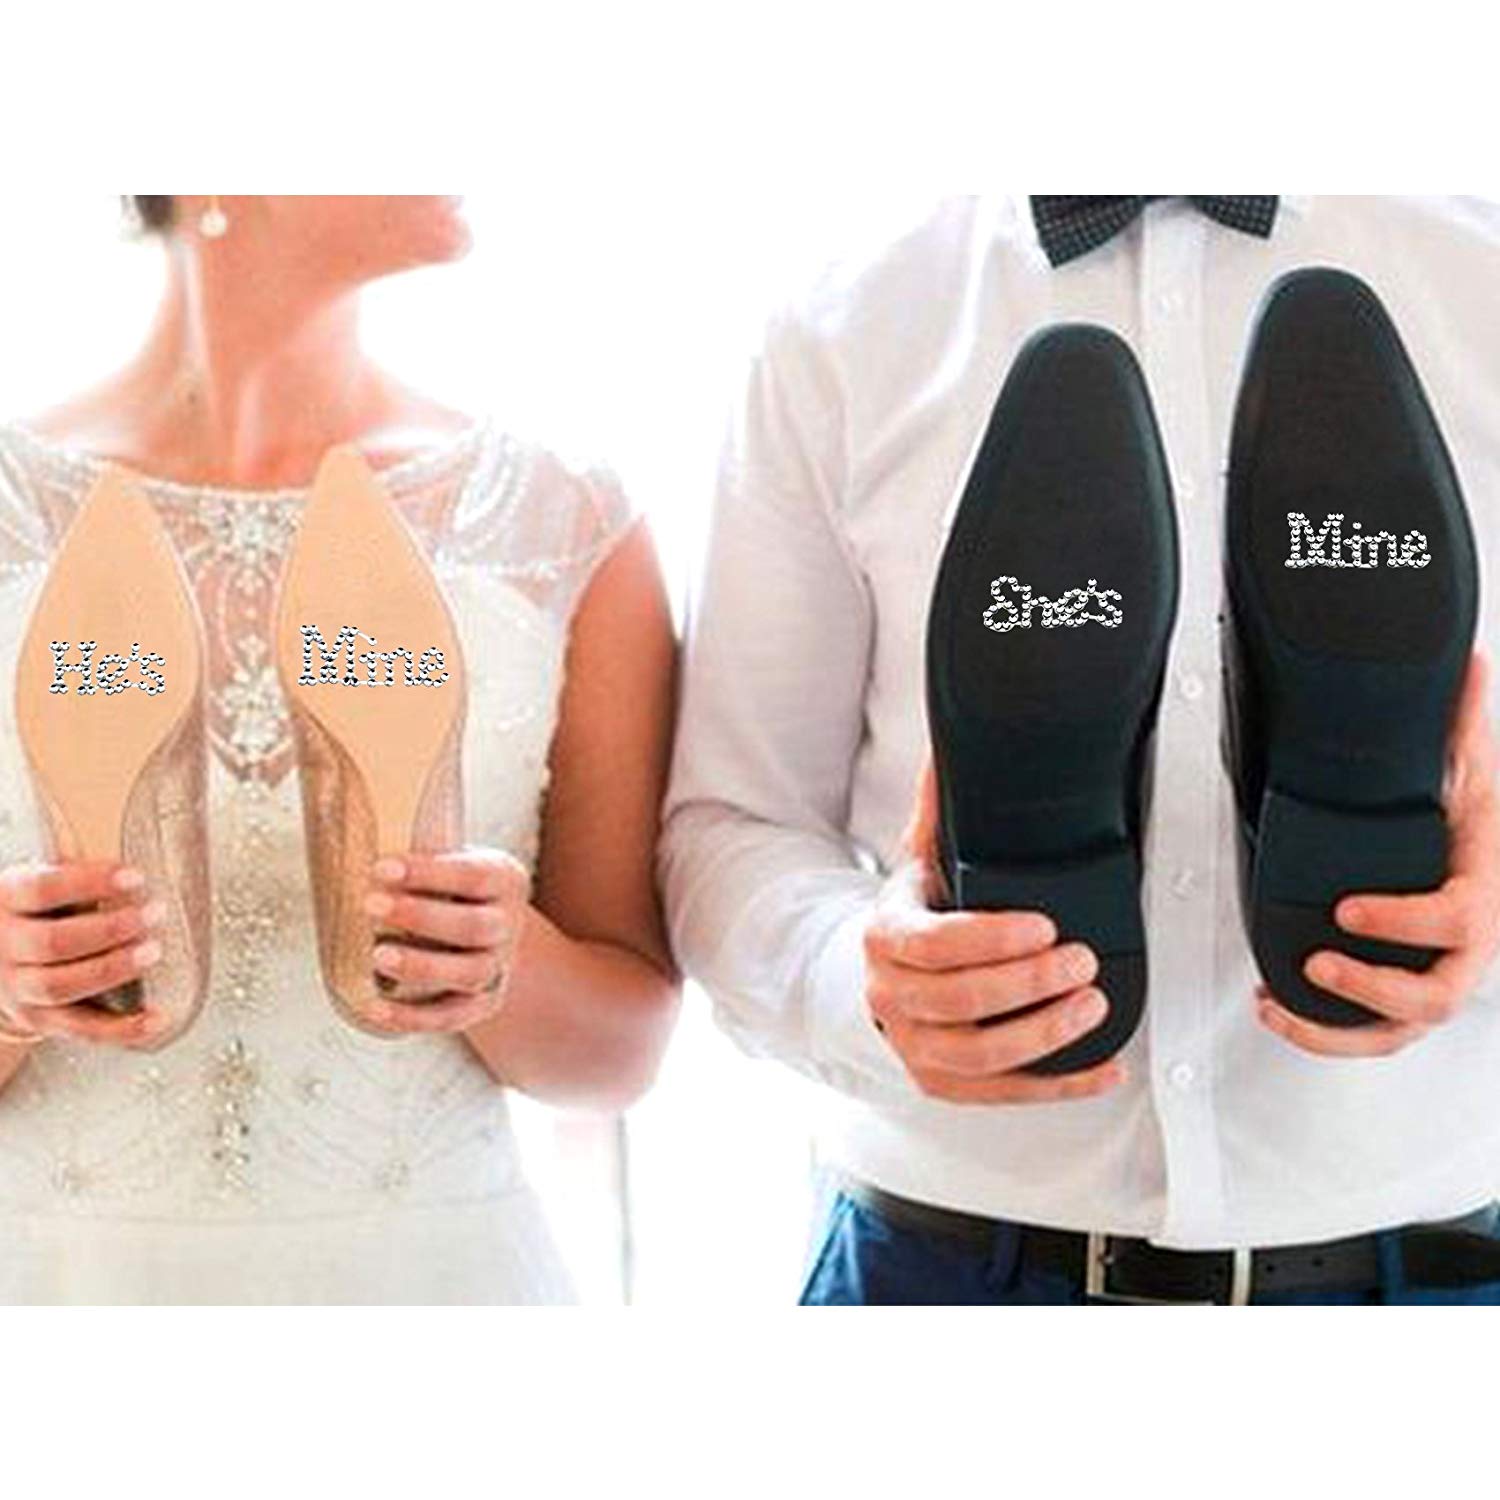 Fun Wedding Rhinestone Shoe Decals Shes Mine Sticker